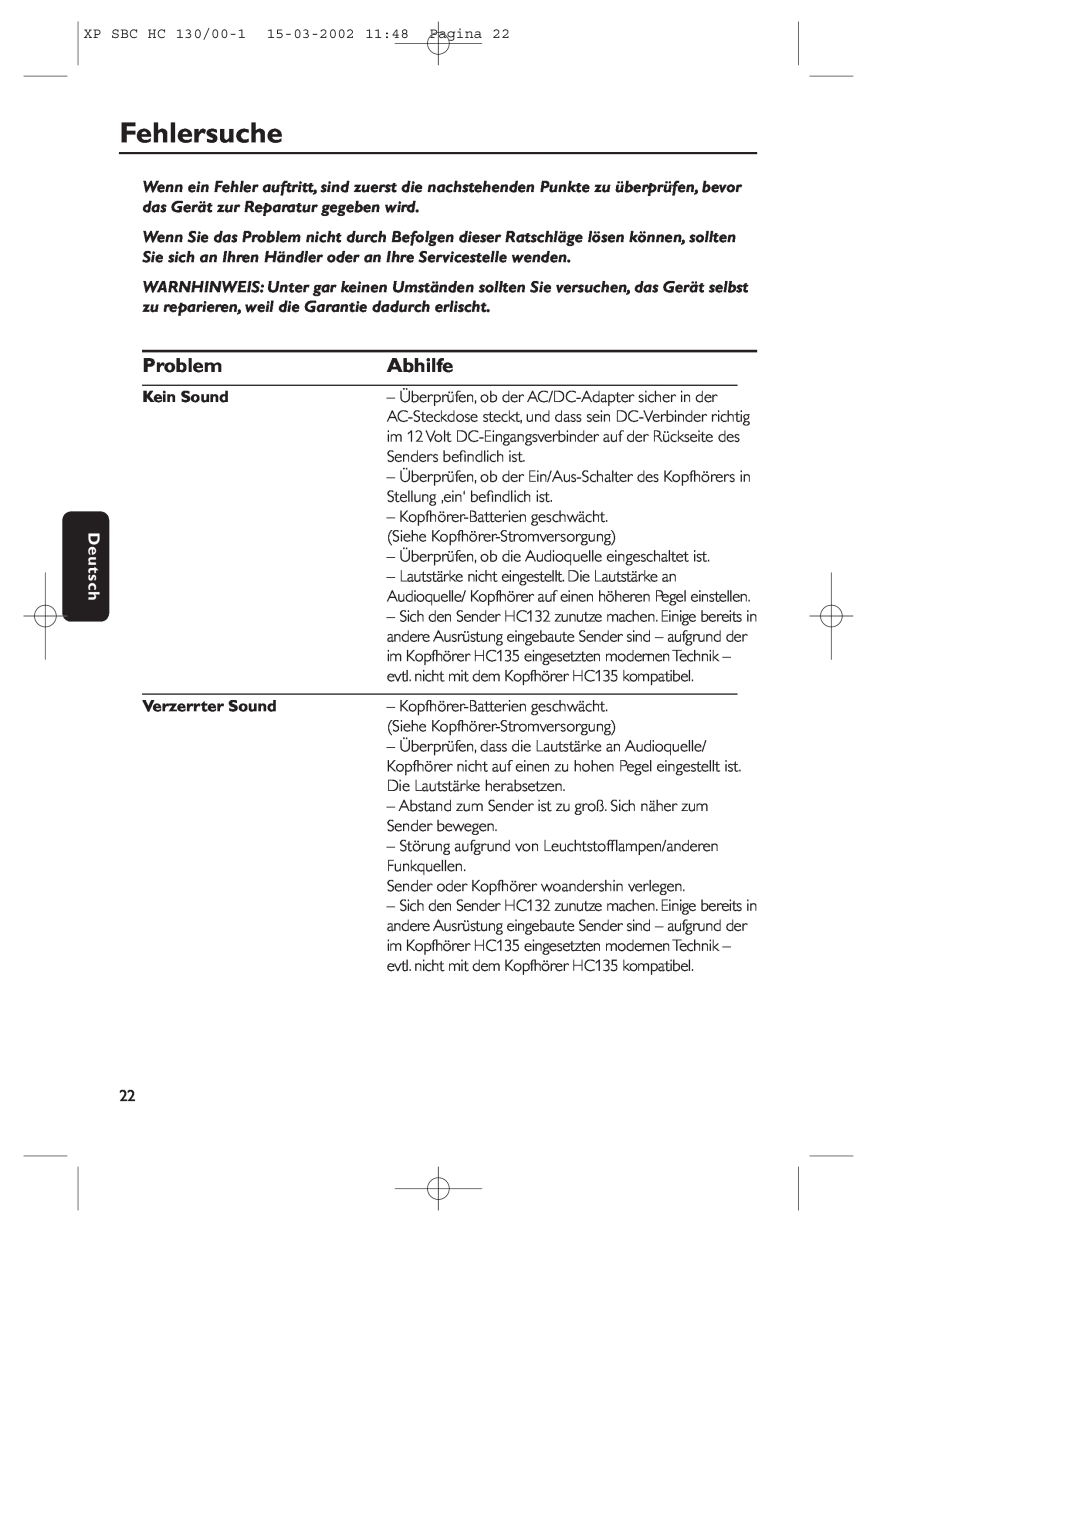 Philips SBC HC130 manual Fehlersuche, Problem, Abhilfe, Deutsch, Kein Sound, Verzerrter Sound 